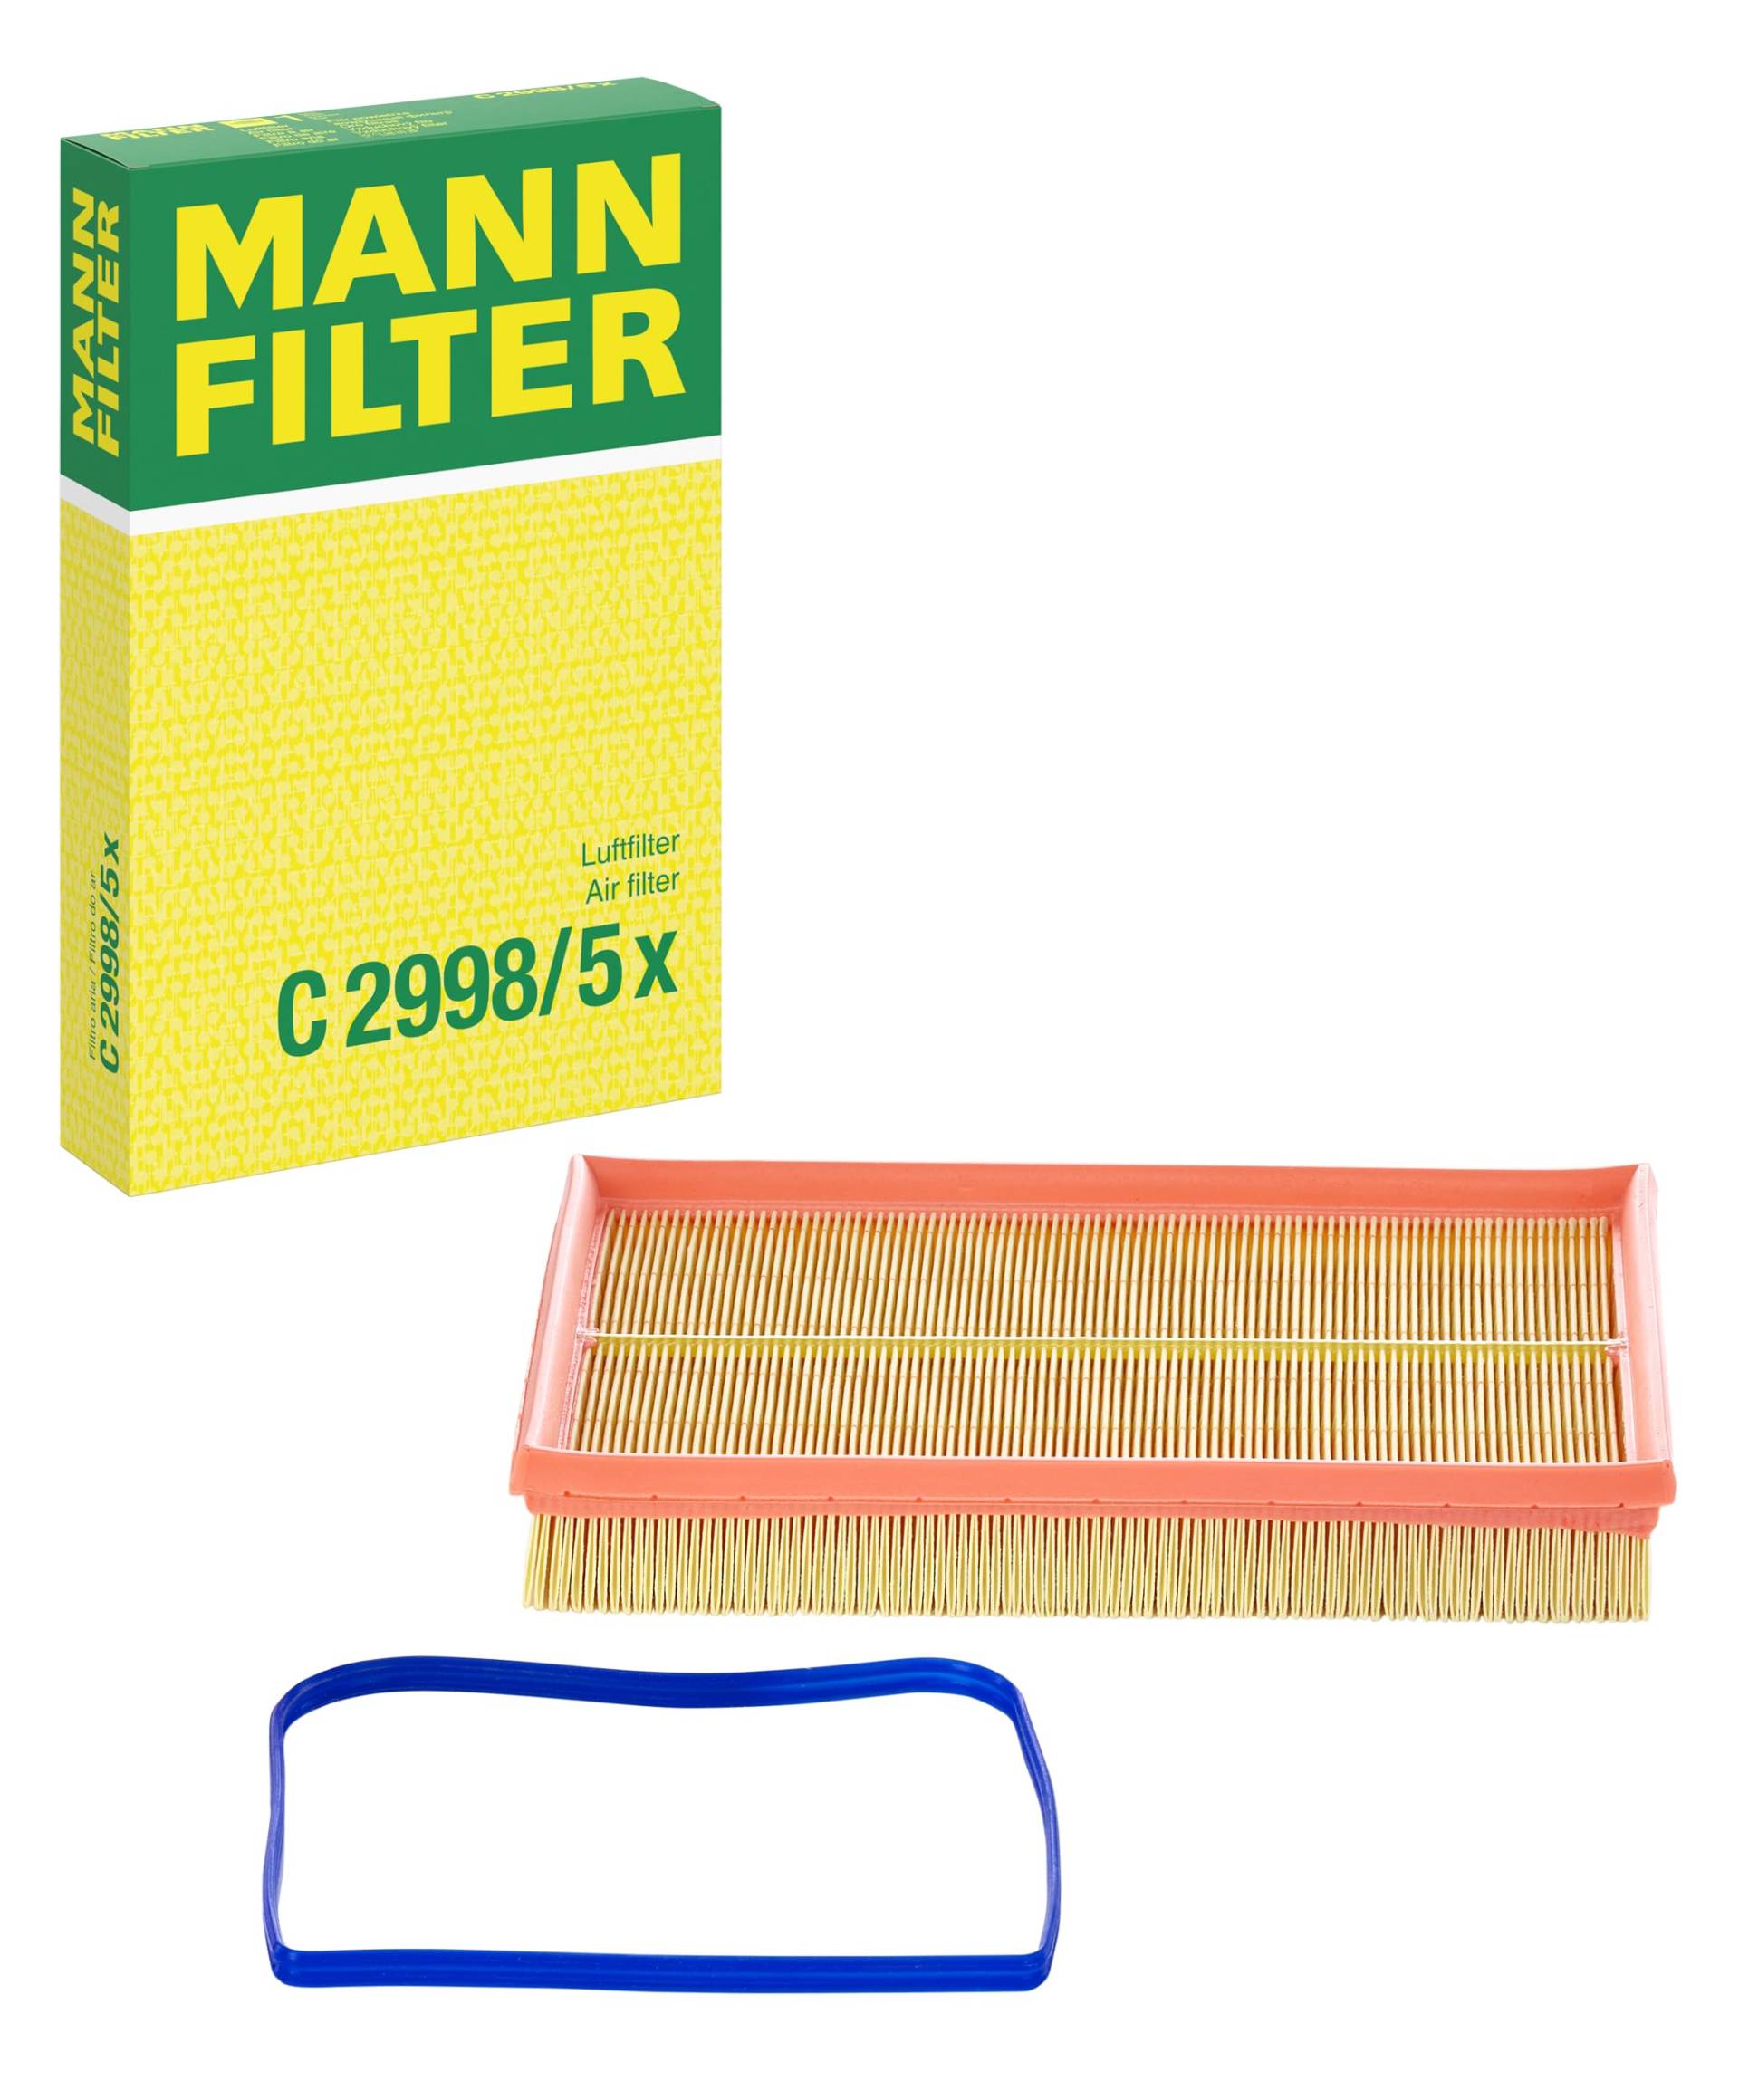 MANN-FILTER C 2998/5 X Luftfilter – Für PKW von MANN-FILTER